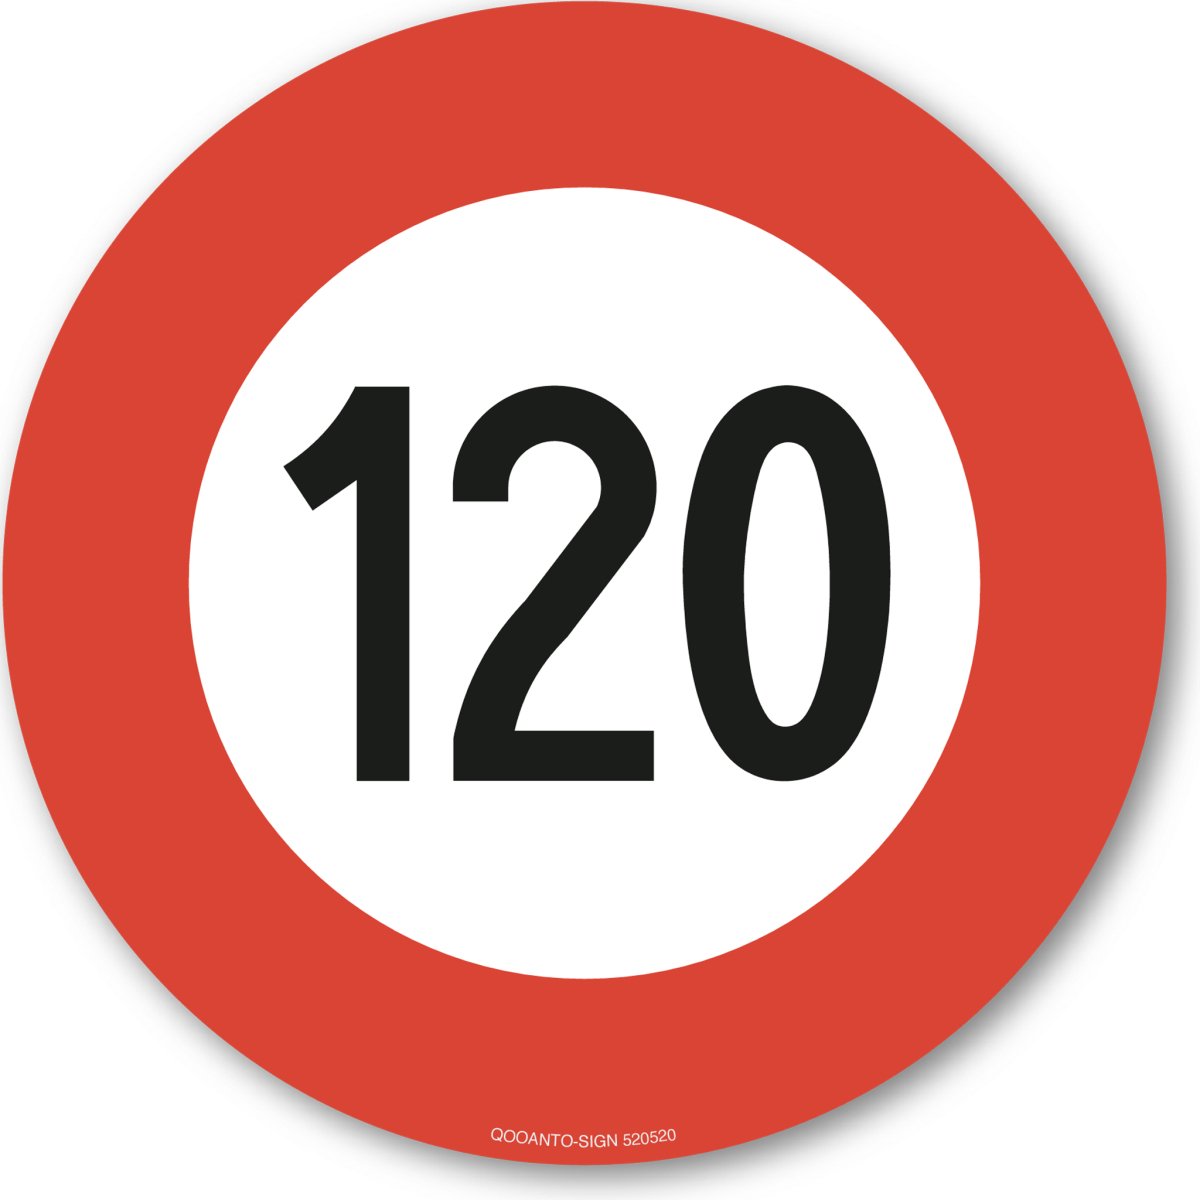 120 Höchstgeschwindigkeit Verkehrsschild oder Aufkleber aus Alu-Verbund oder Selbstklebefolie mit UV-Schutz - QOOANTO-SIGN